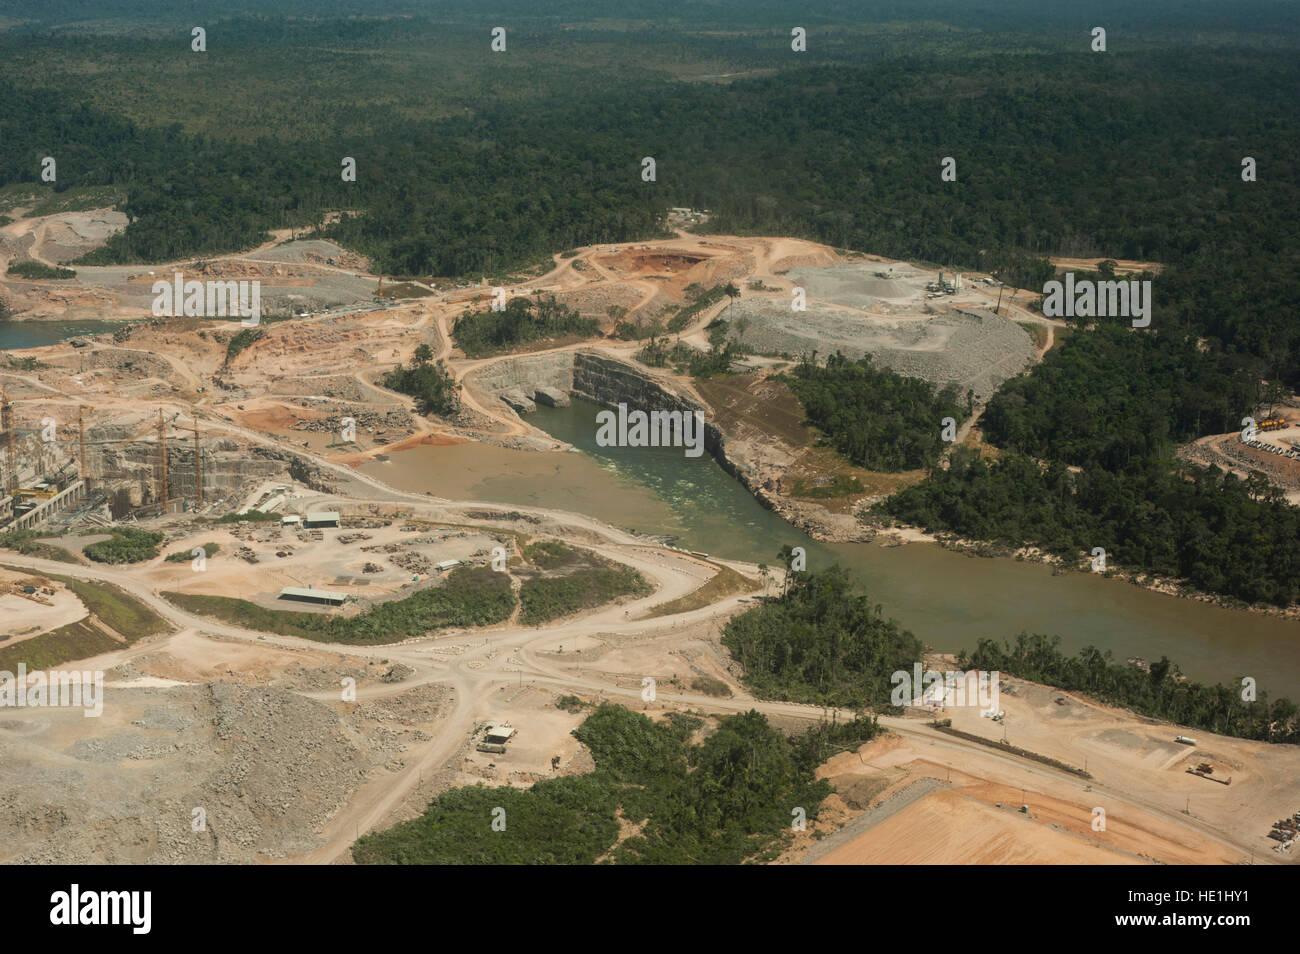 Usine d'énergie hydroélectrique dans la forêt amazonienne brésilienne. Situé dans la rivière Teles Pires, près de la ville de Alta Floresta. Banque D'Images